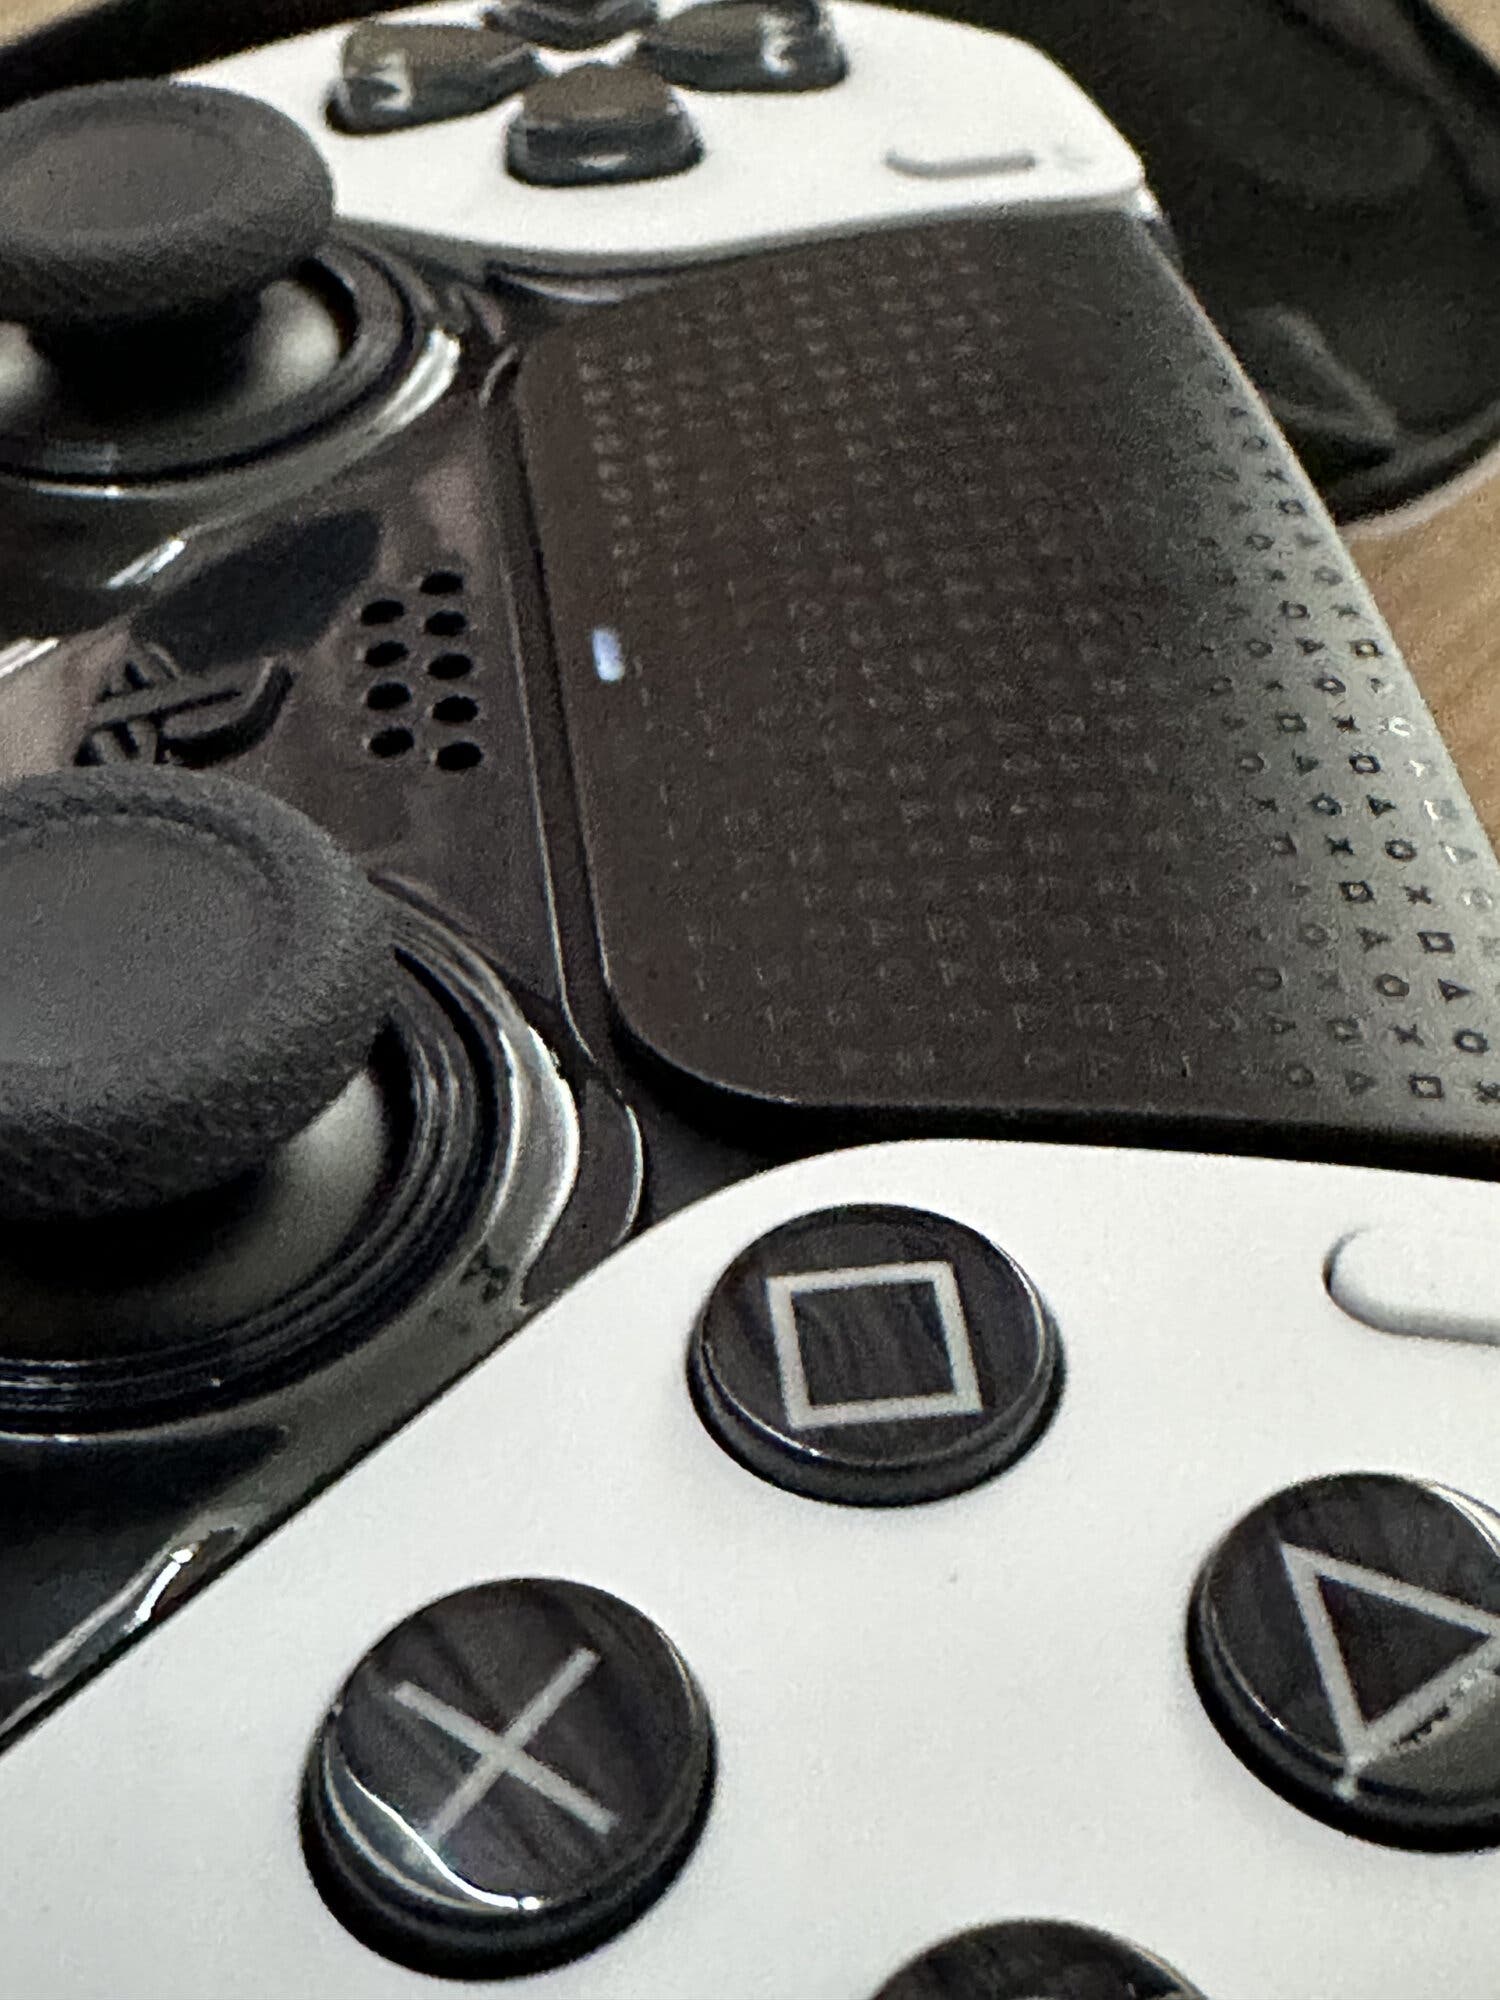 Análisis DualSense Edge: ¿Merece la pena el nuevo mando de PS5?